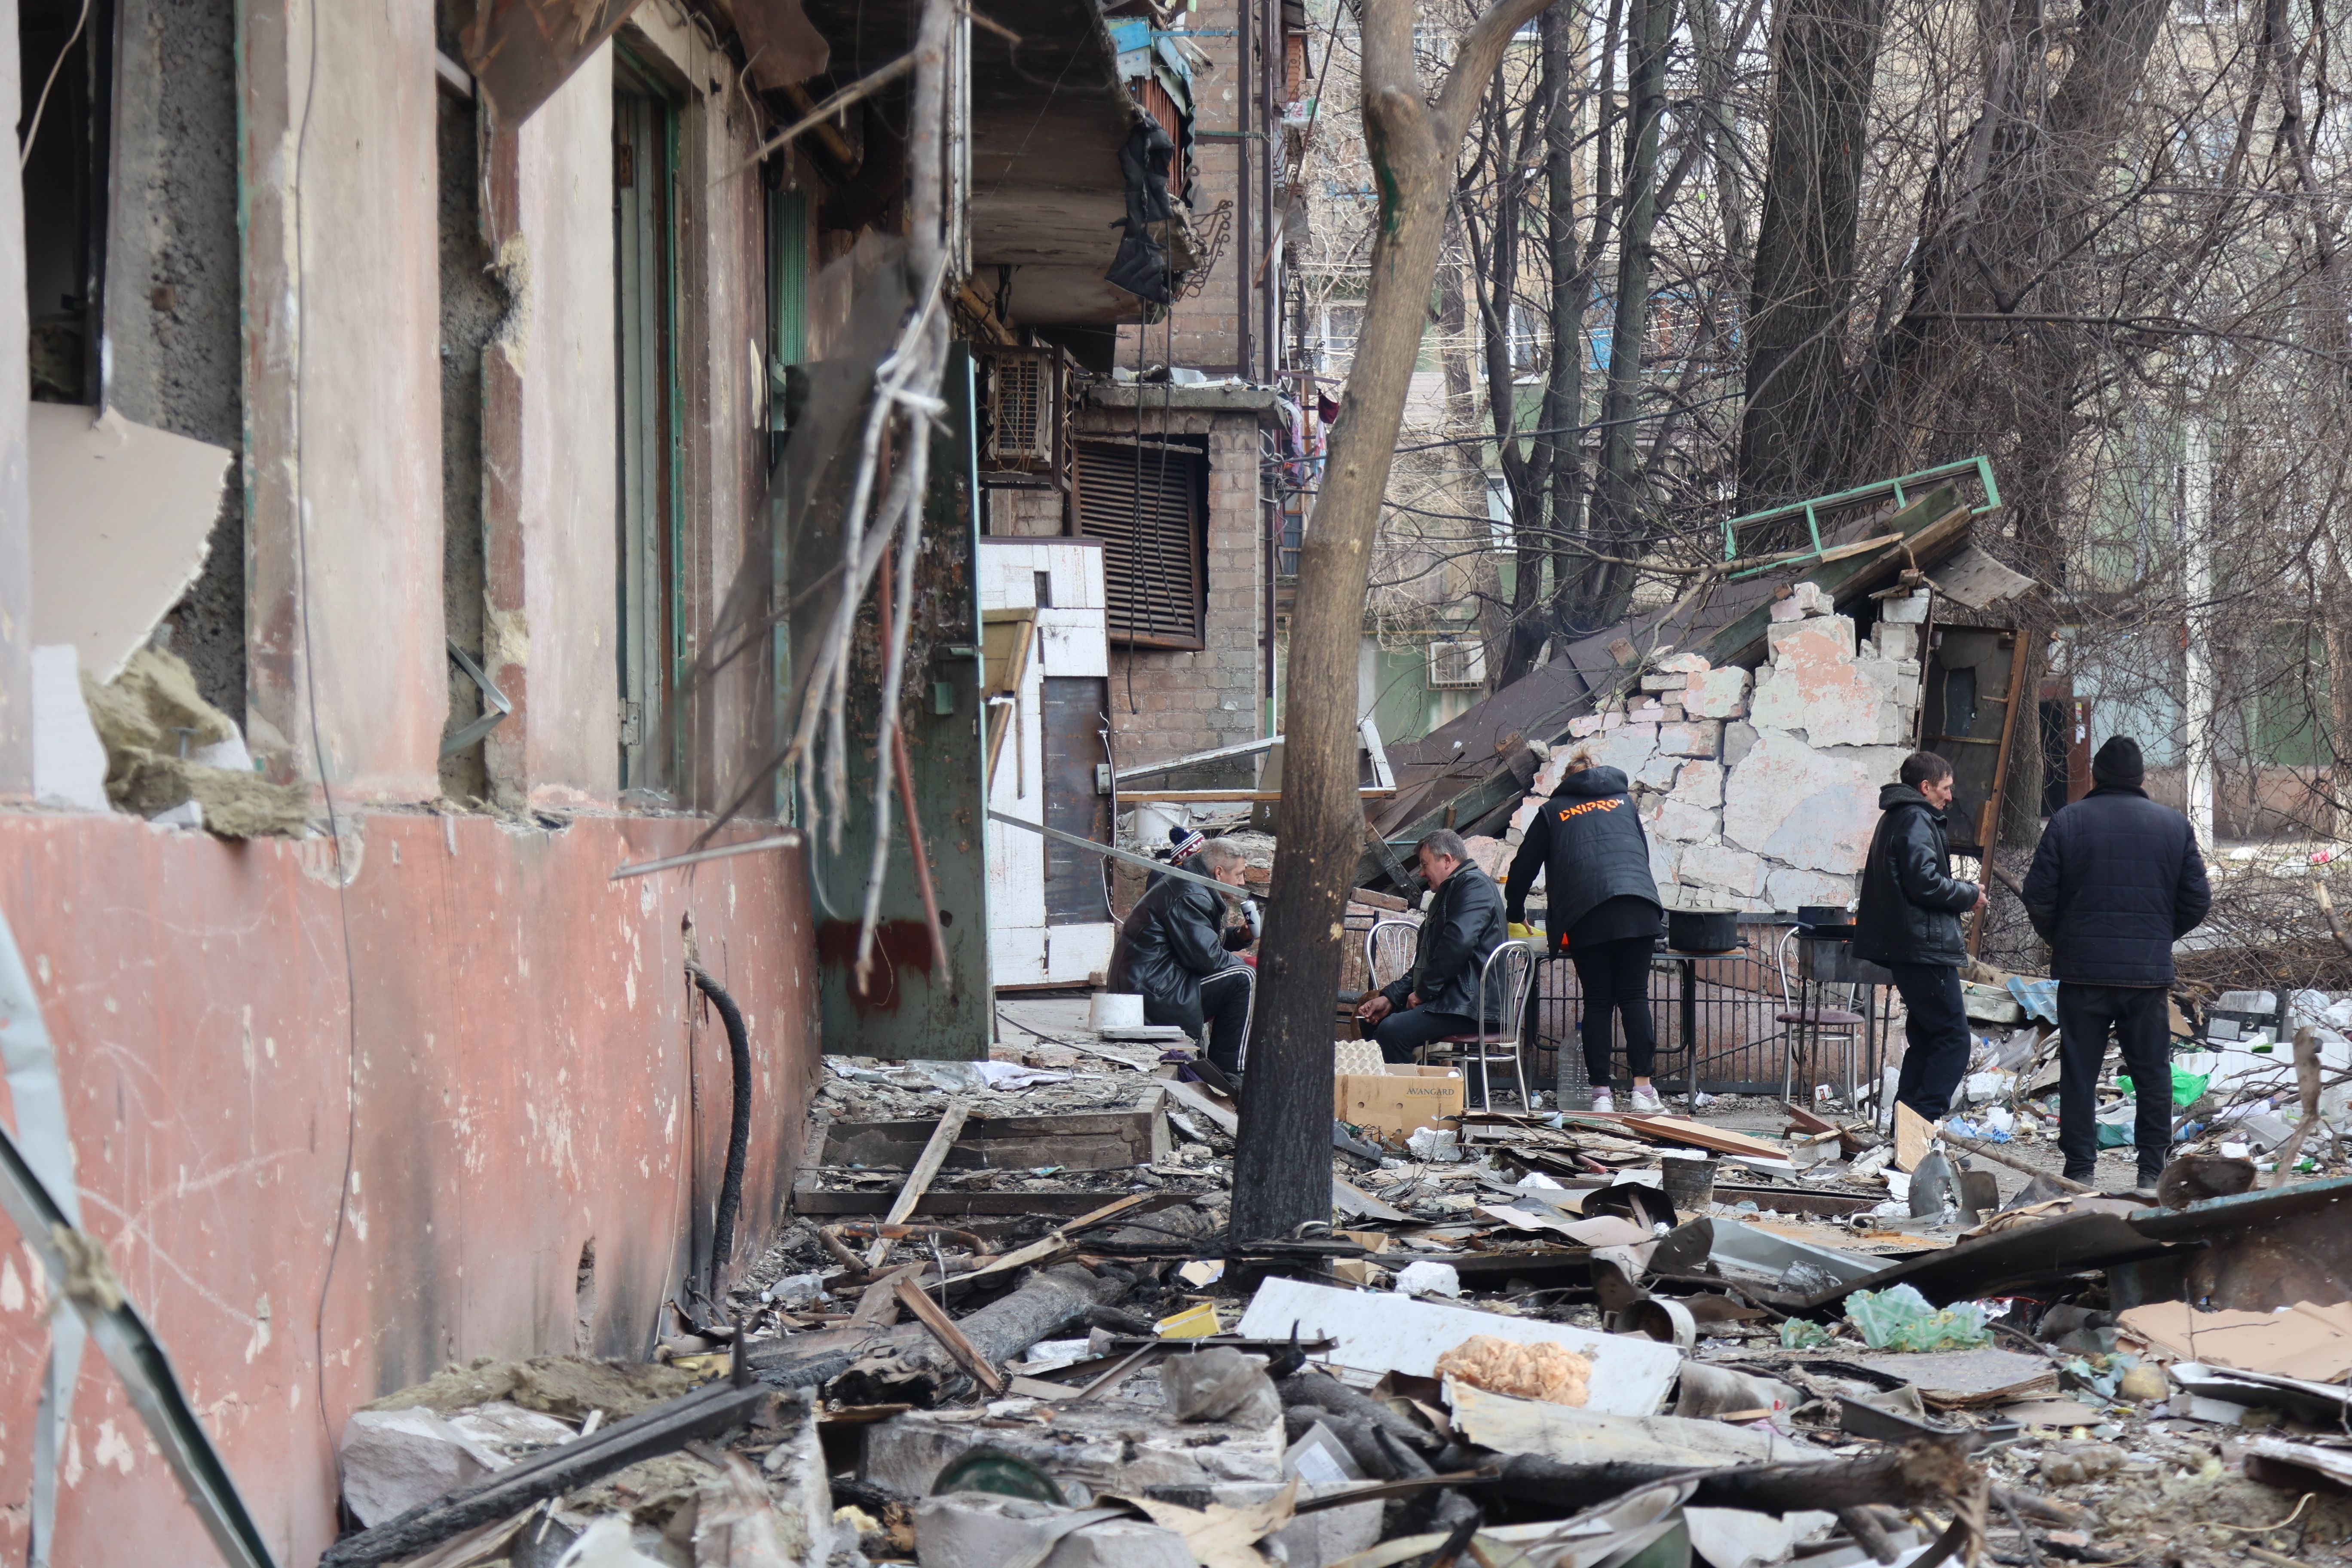     منظر لمباني ومركبات تضررت بعد قصف مدينة ماريوبول الأوكرانية في 29 آذار / مارس ، التي يسيطر عليها الجيش الروسي والانفصاليون الموالون لروسيا.